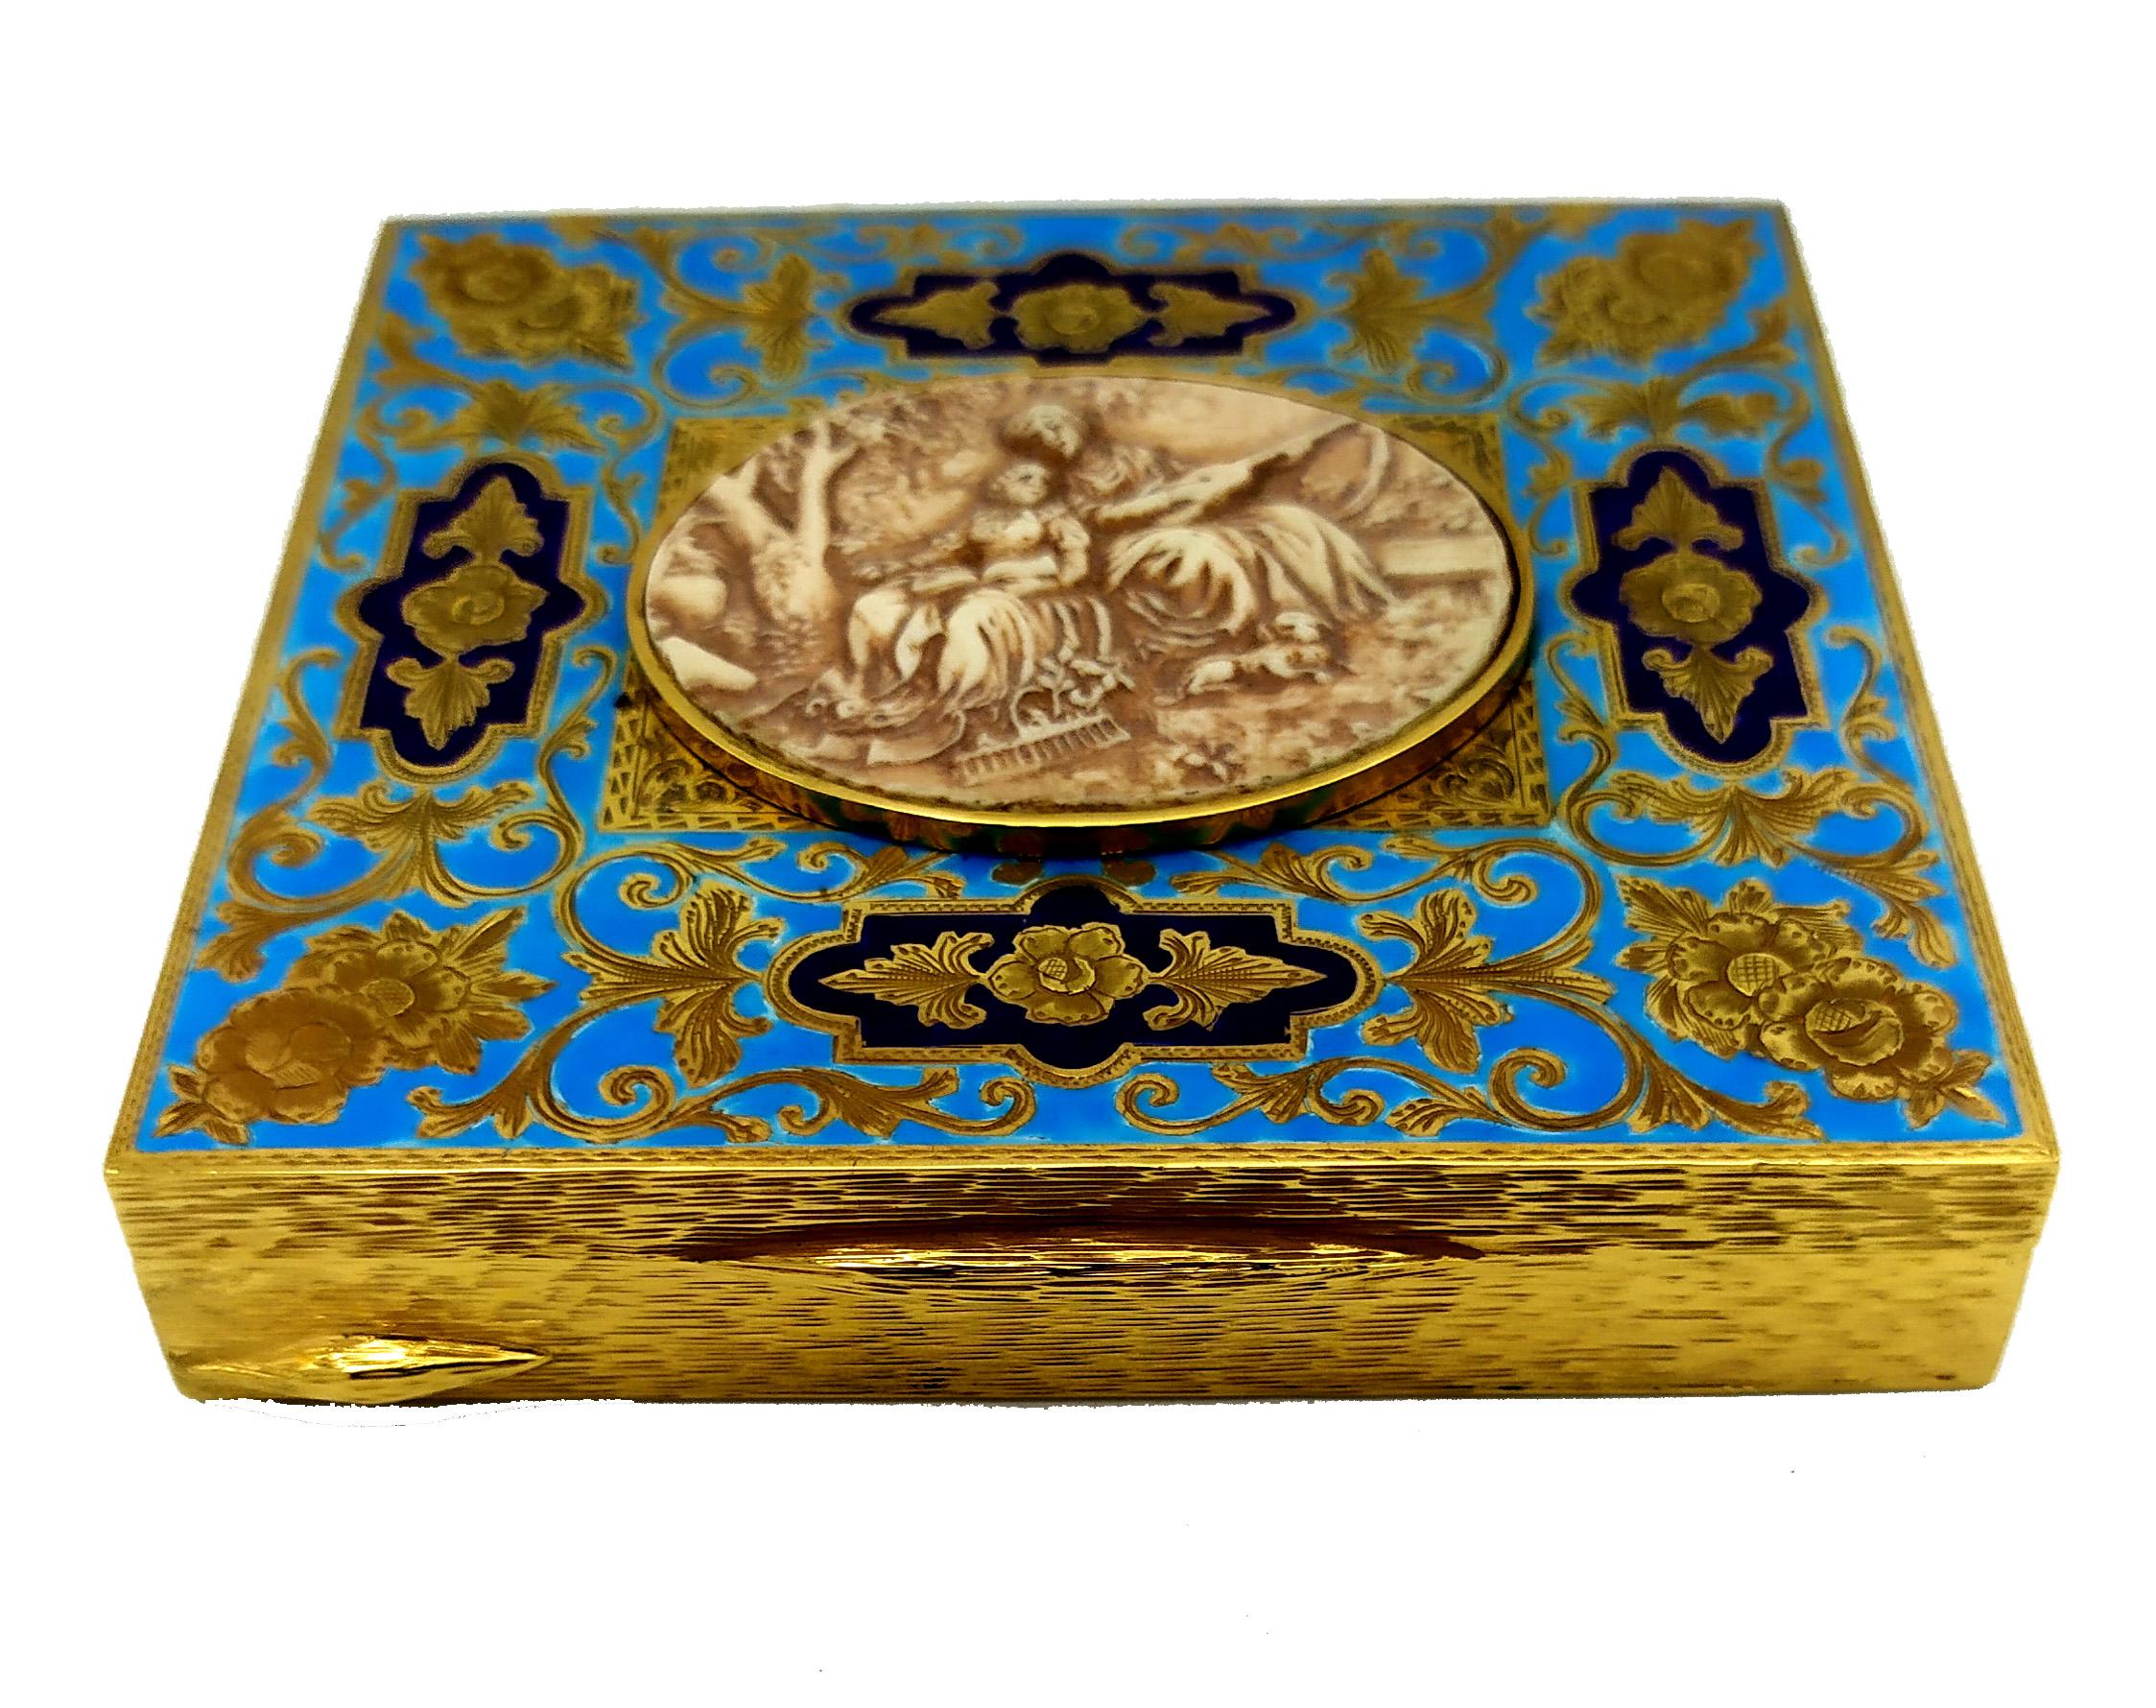 Rechteckige Tischbox aus Sterlingsilber  925/1000 vergoldet mit sehr feiner Handgravur im Barockstil auf dem Deckel, 2-farbig feueremailliert. In der Mitte eine alte ovale Platte cm. 4 x 4,8 handgeschnitzt, die eine pastorale Szene darstellt.